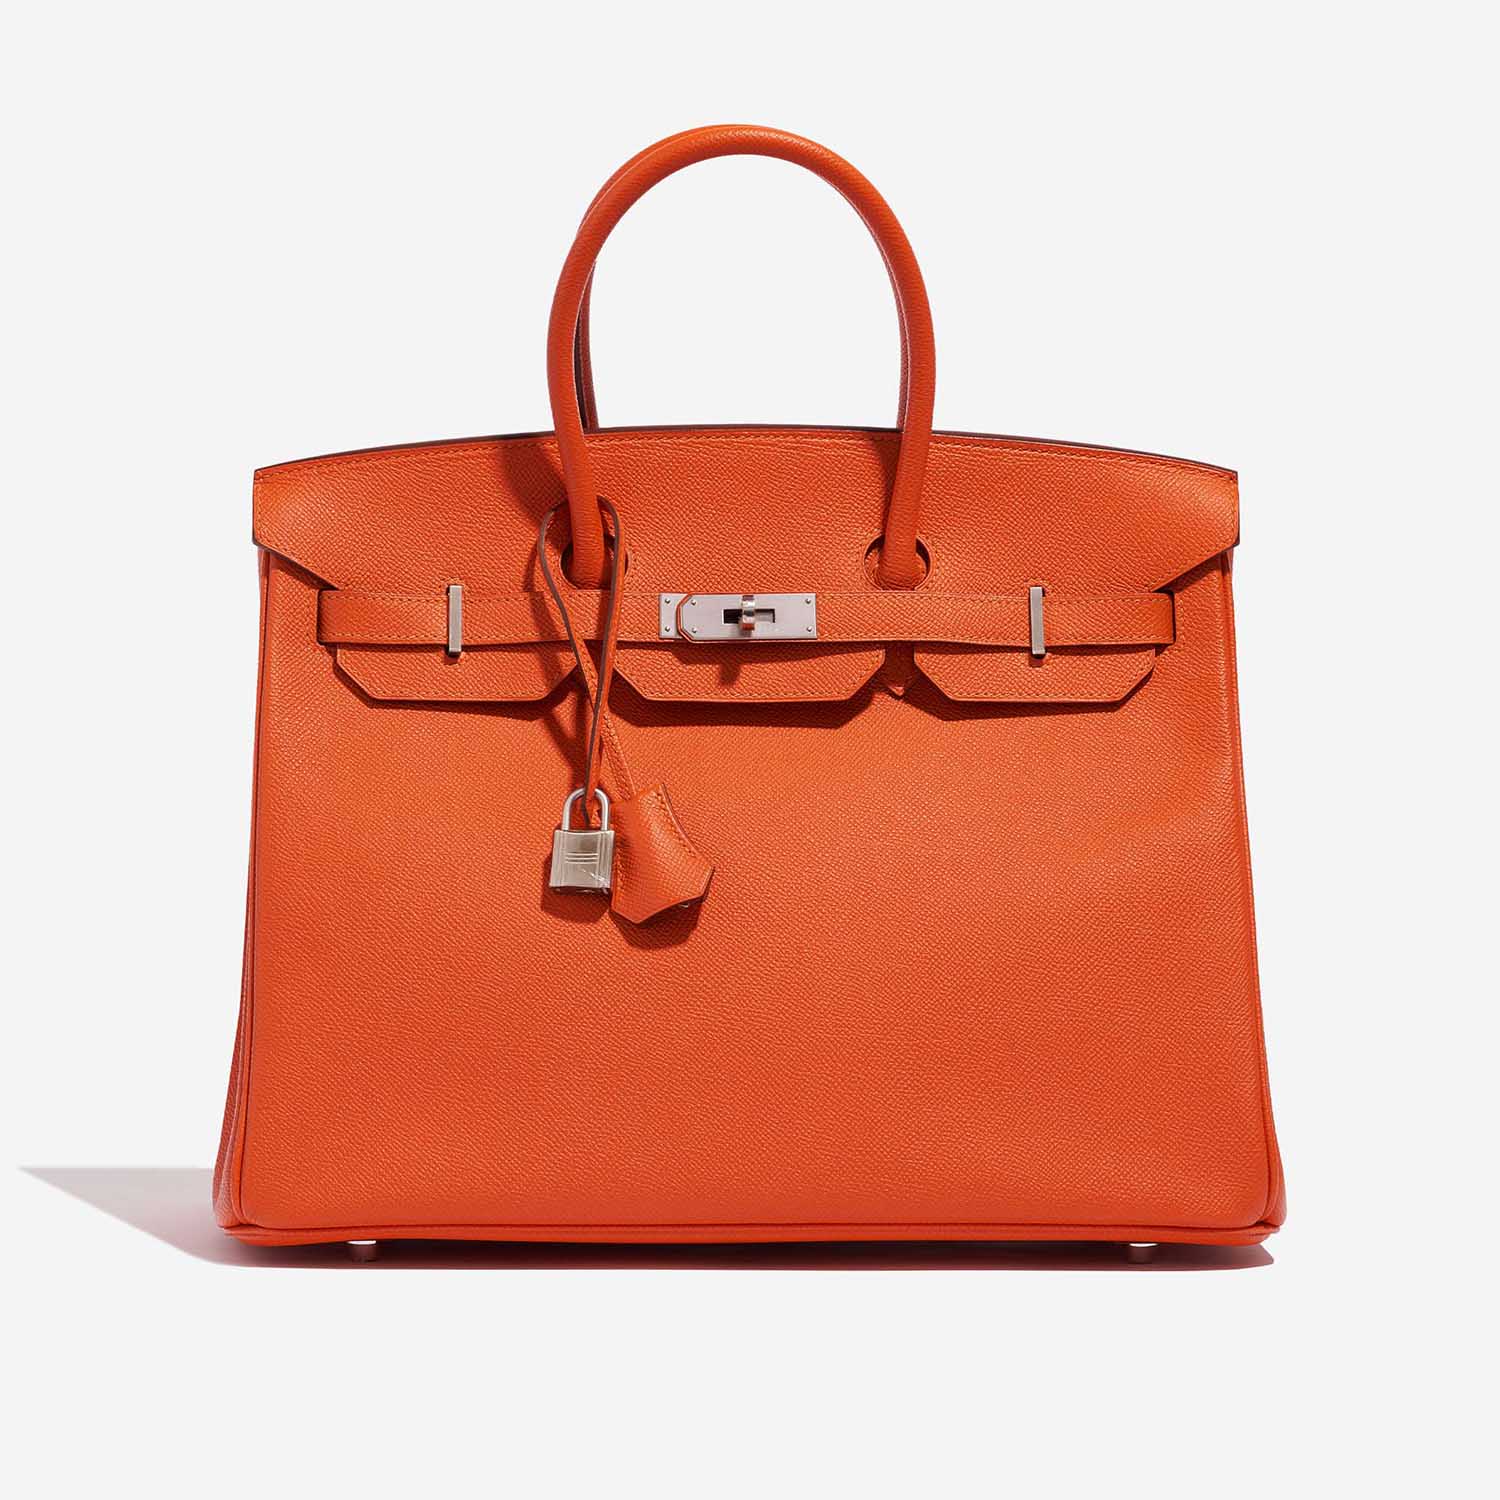 Hermès Birkin 35 Feu Front | Verkaufen Sie Ihre Designer-Tasche auf Saclab.com